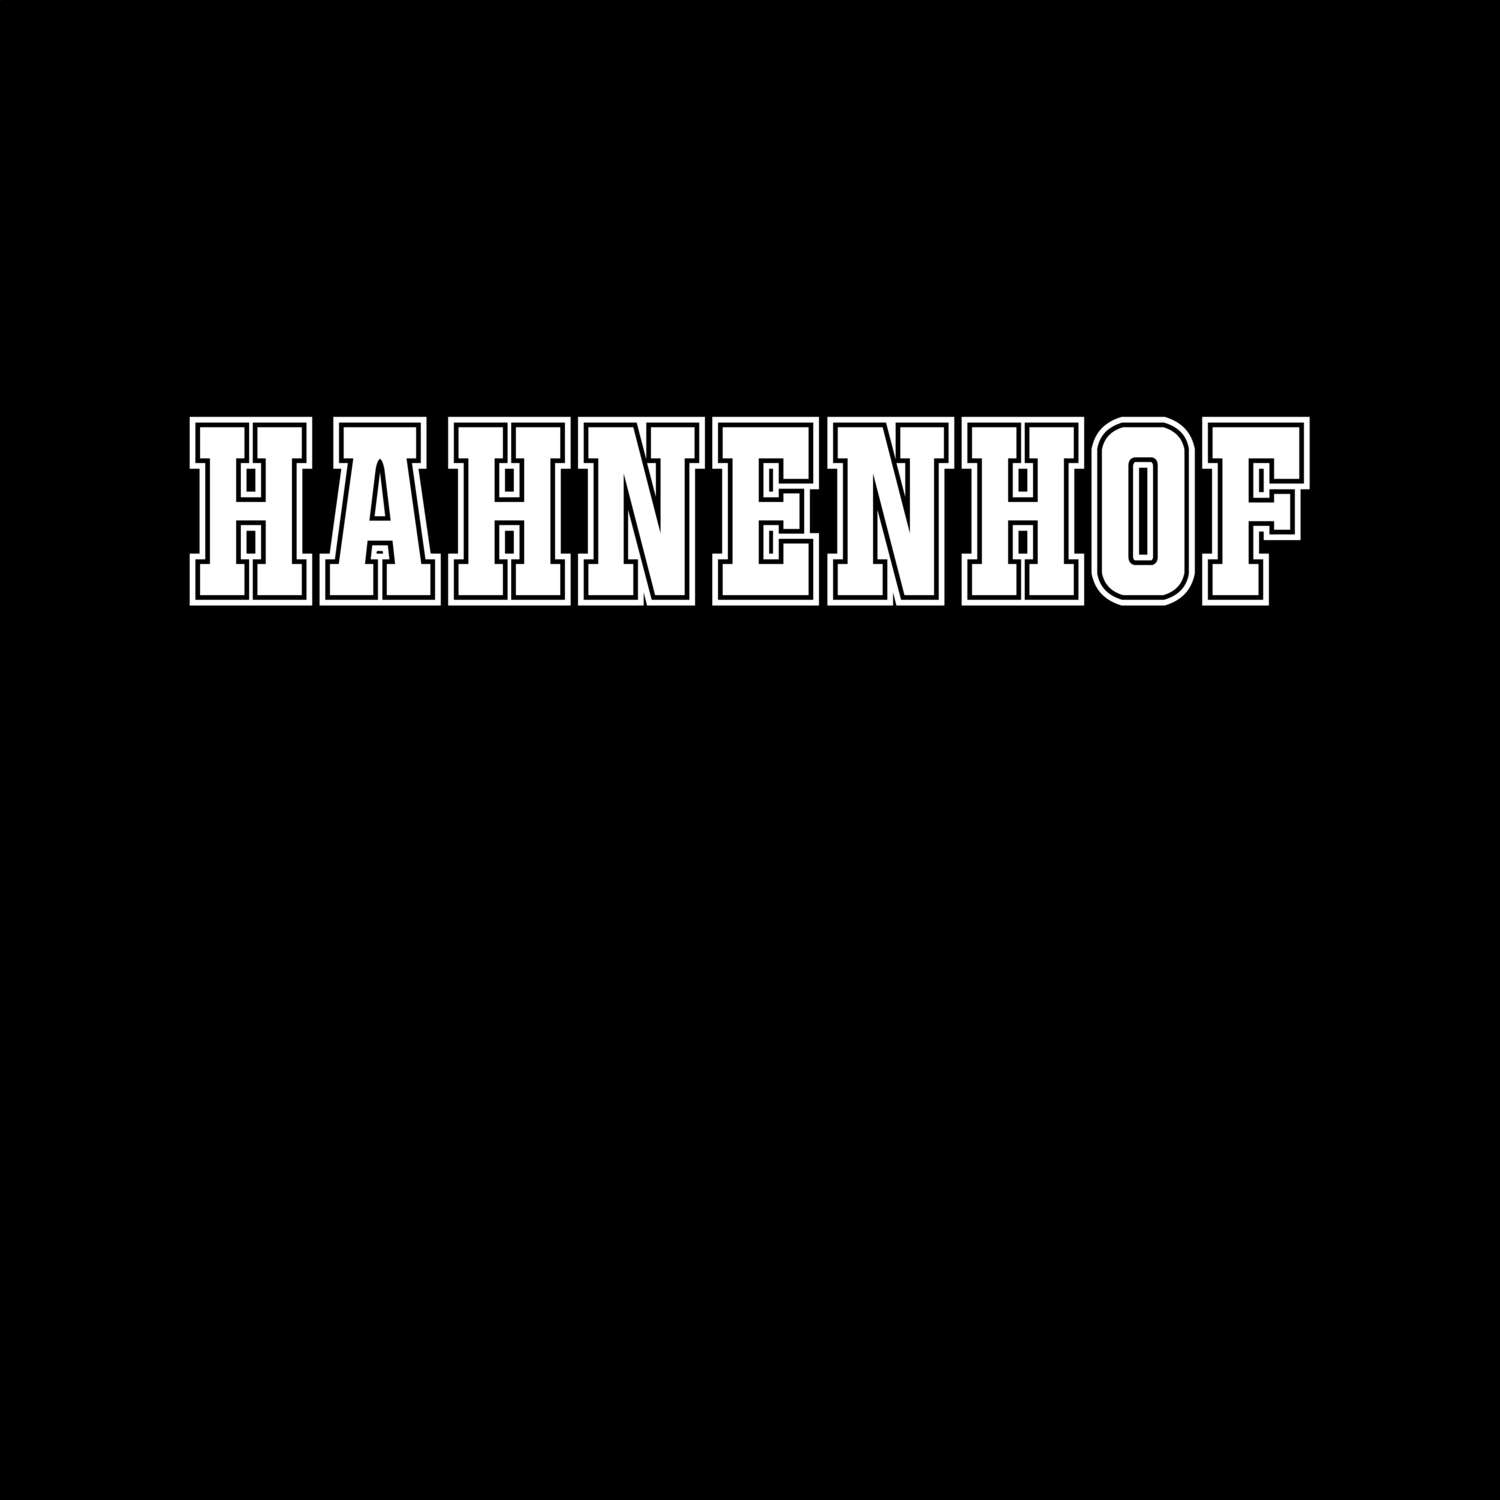 Hahnenhof T-Shirt »Classic«